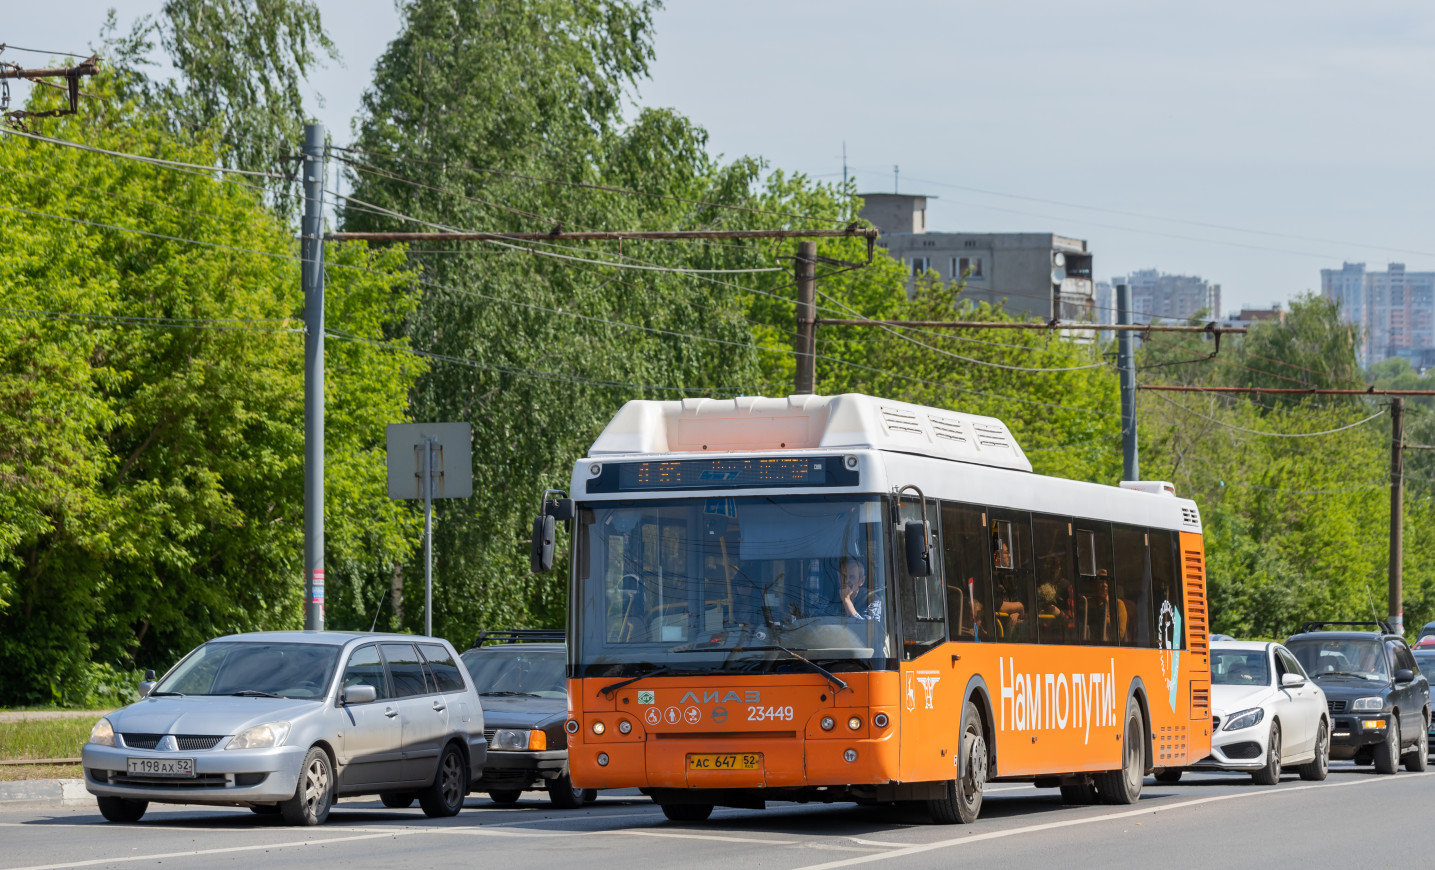 В транспорте Нижнего Новгорода ввели экспериментальные карты для оплаты проезда